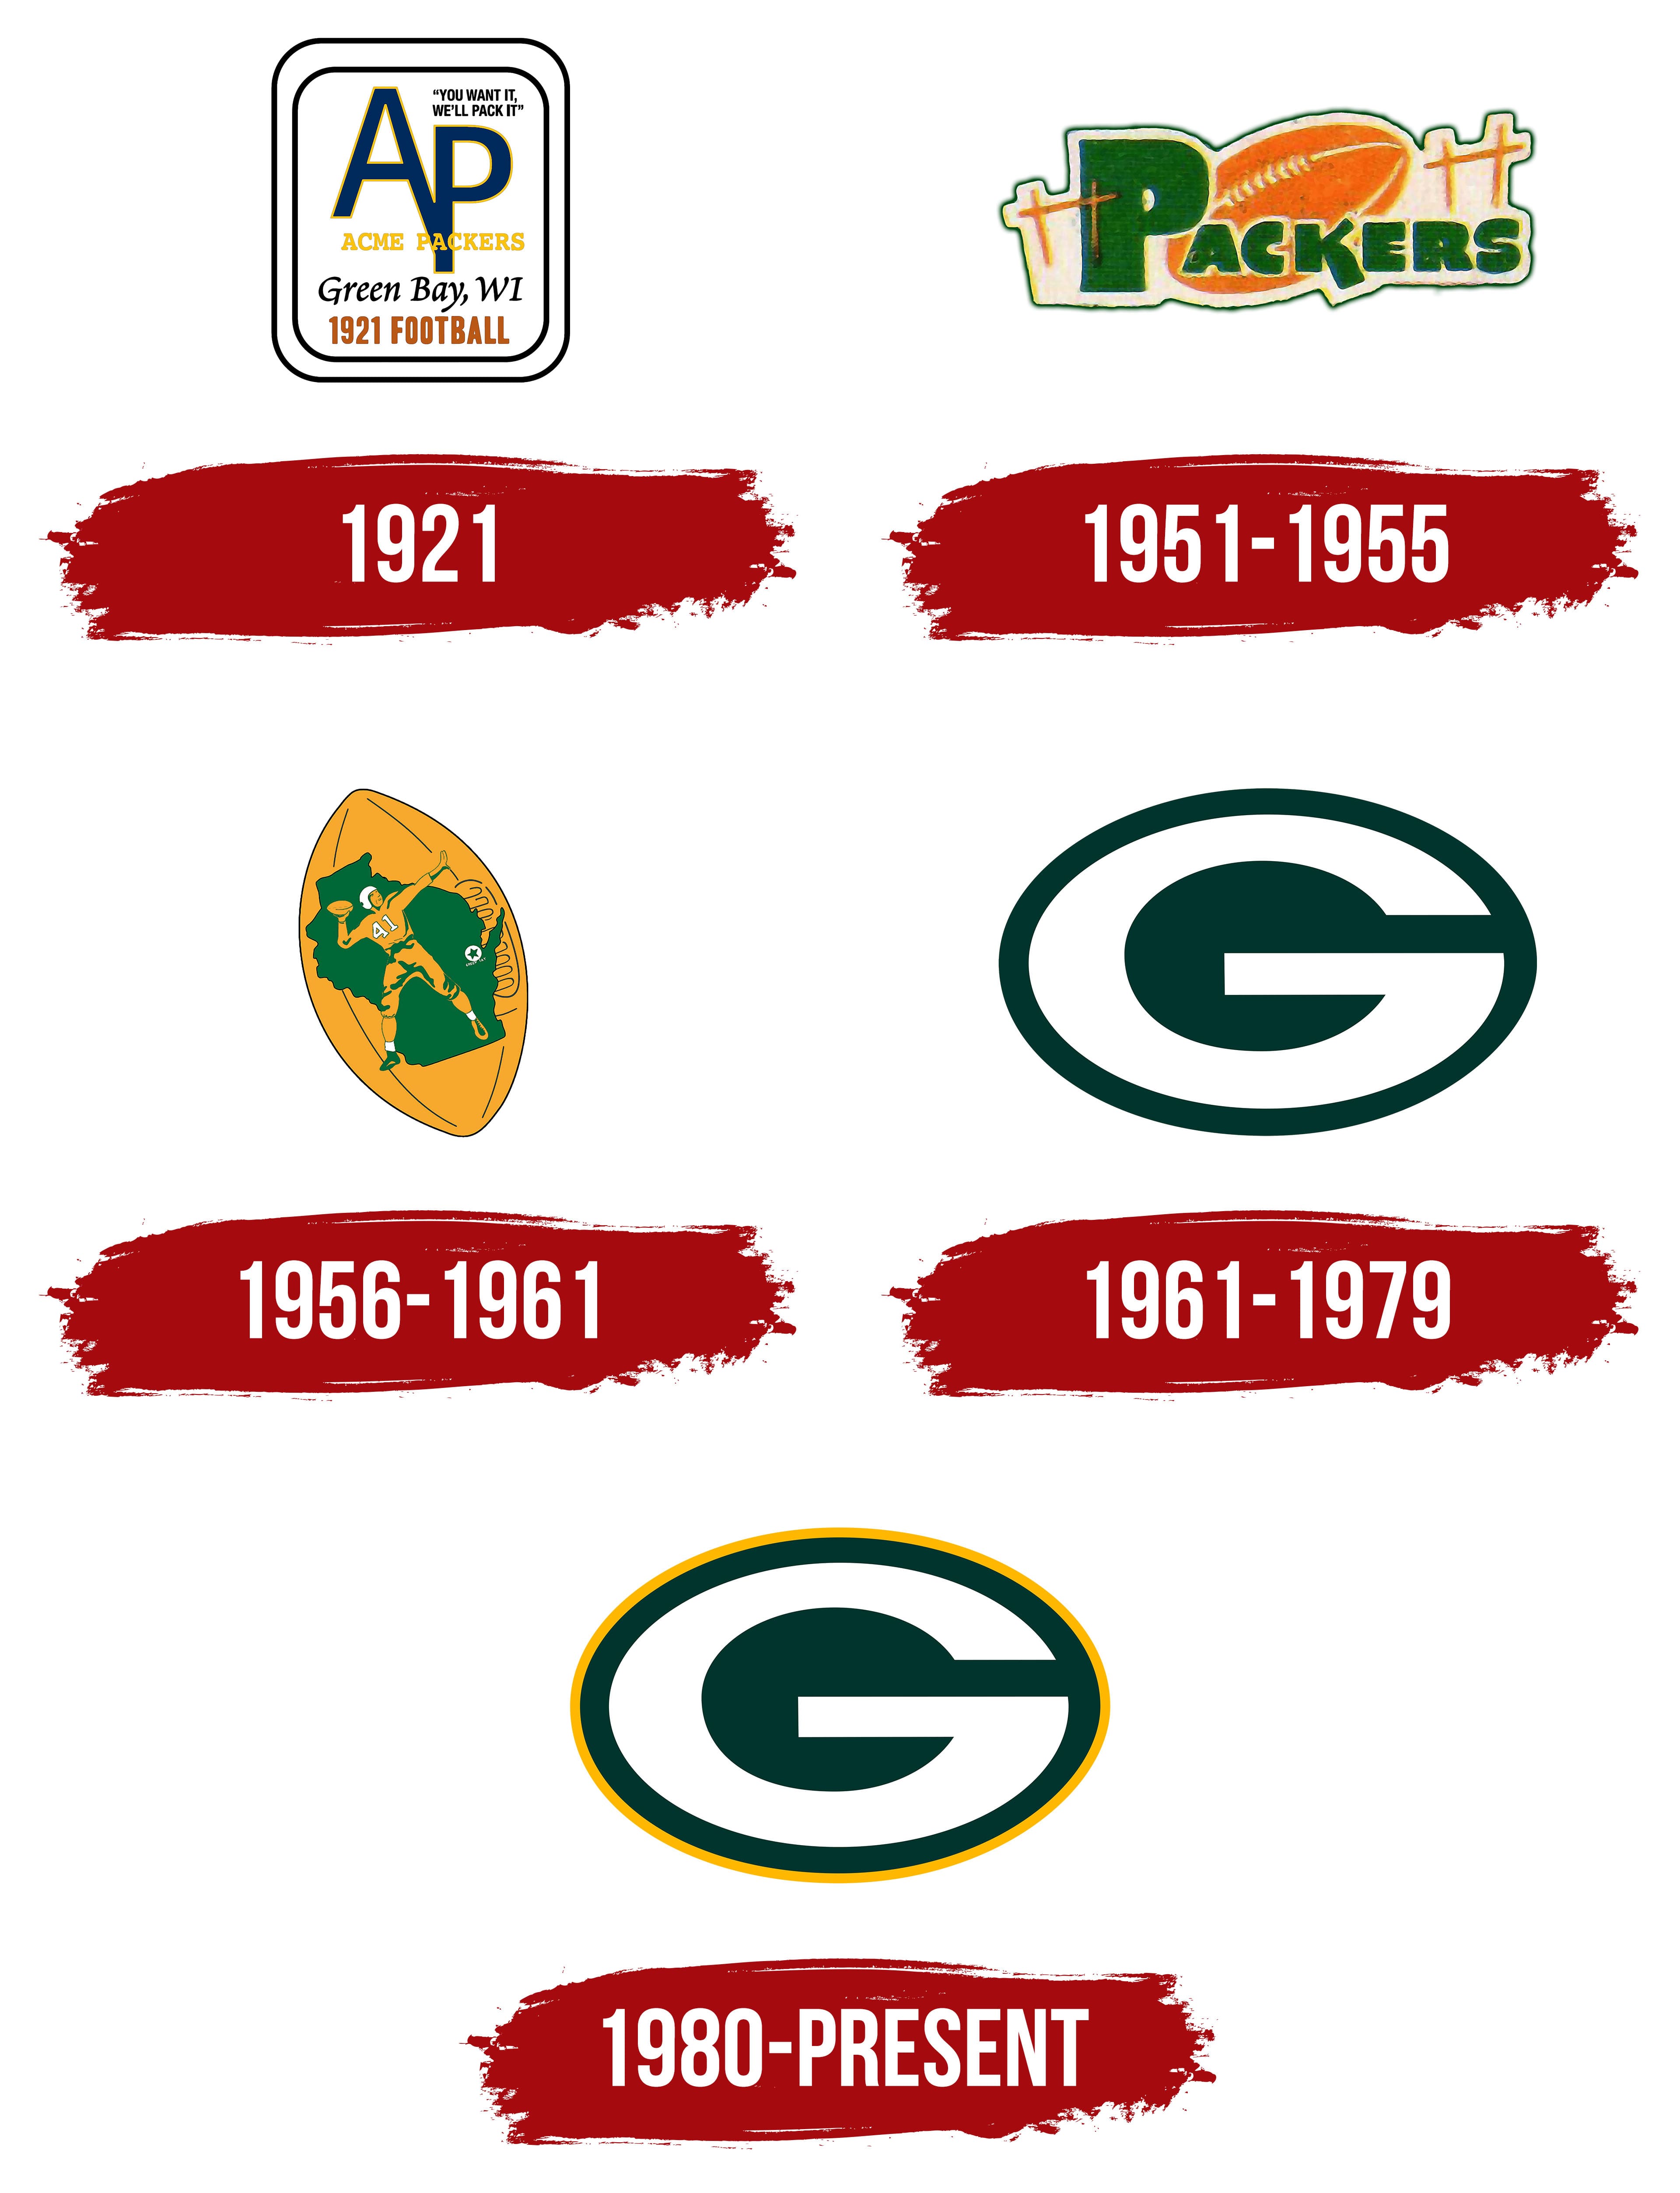 Logo De Green Bay Packers La Historia Y El Significad - vrogue.co